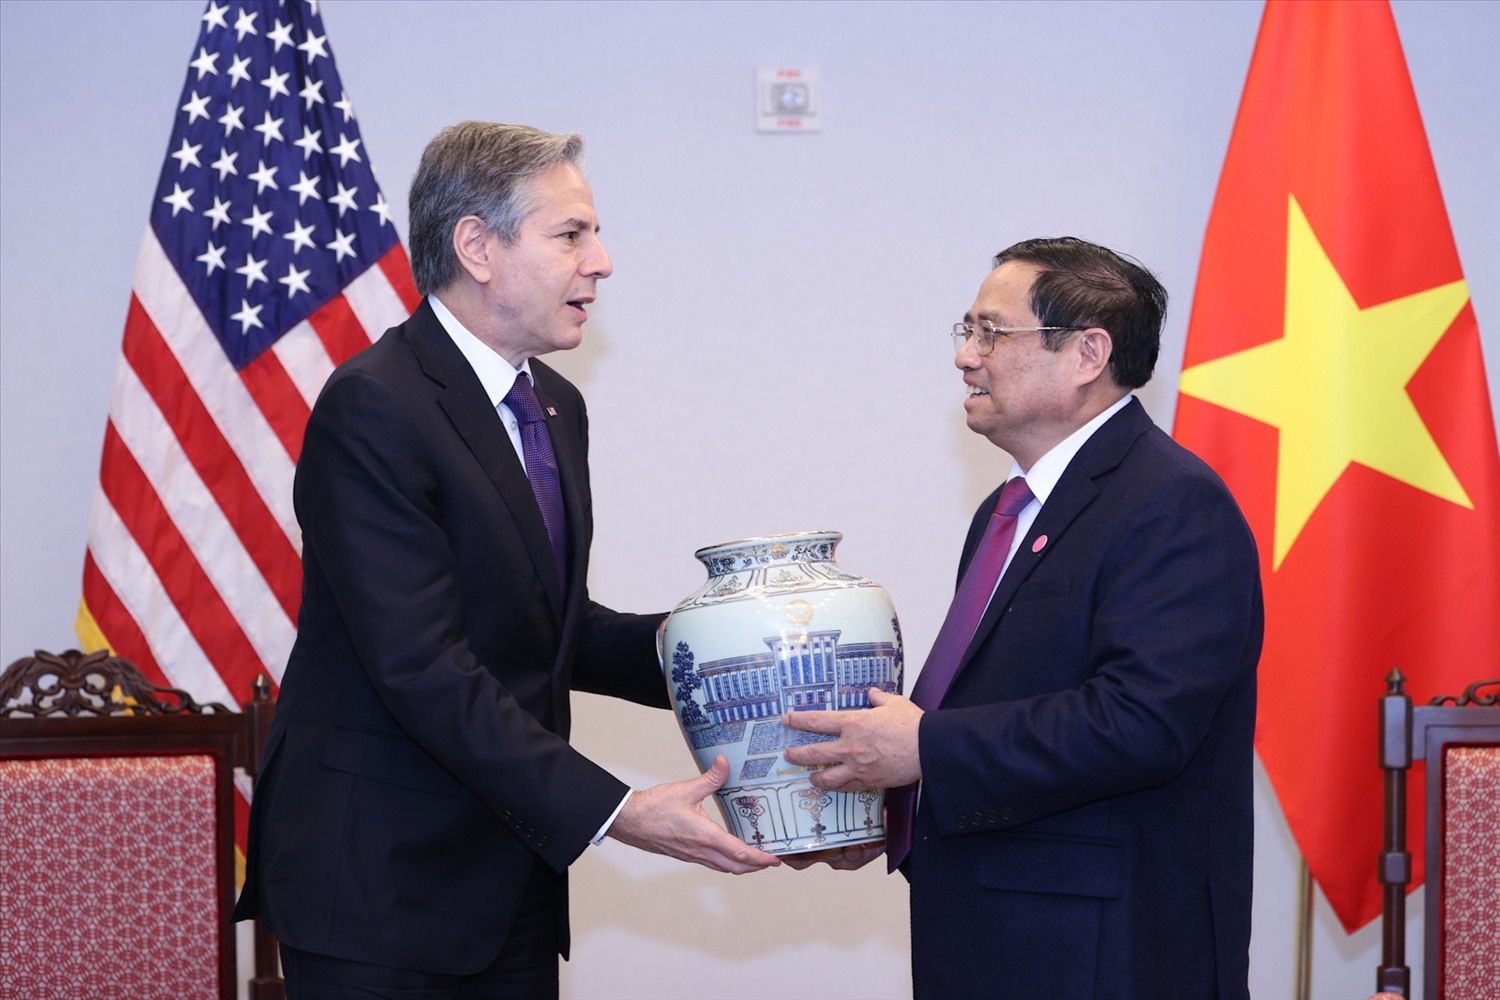 Thủ tướng Phạm Minh Chính tặng Ngoại trưởng Blinken chiếc bình gốm men lam, sản phẩm truyền thống của Việt Nam - Ảnh: VGP/Nhật Bắc